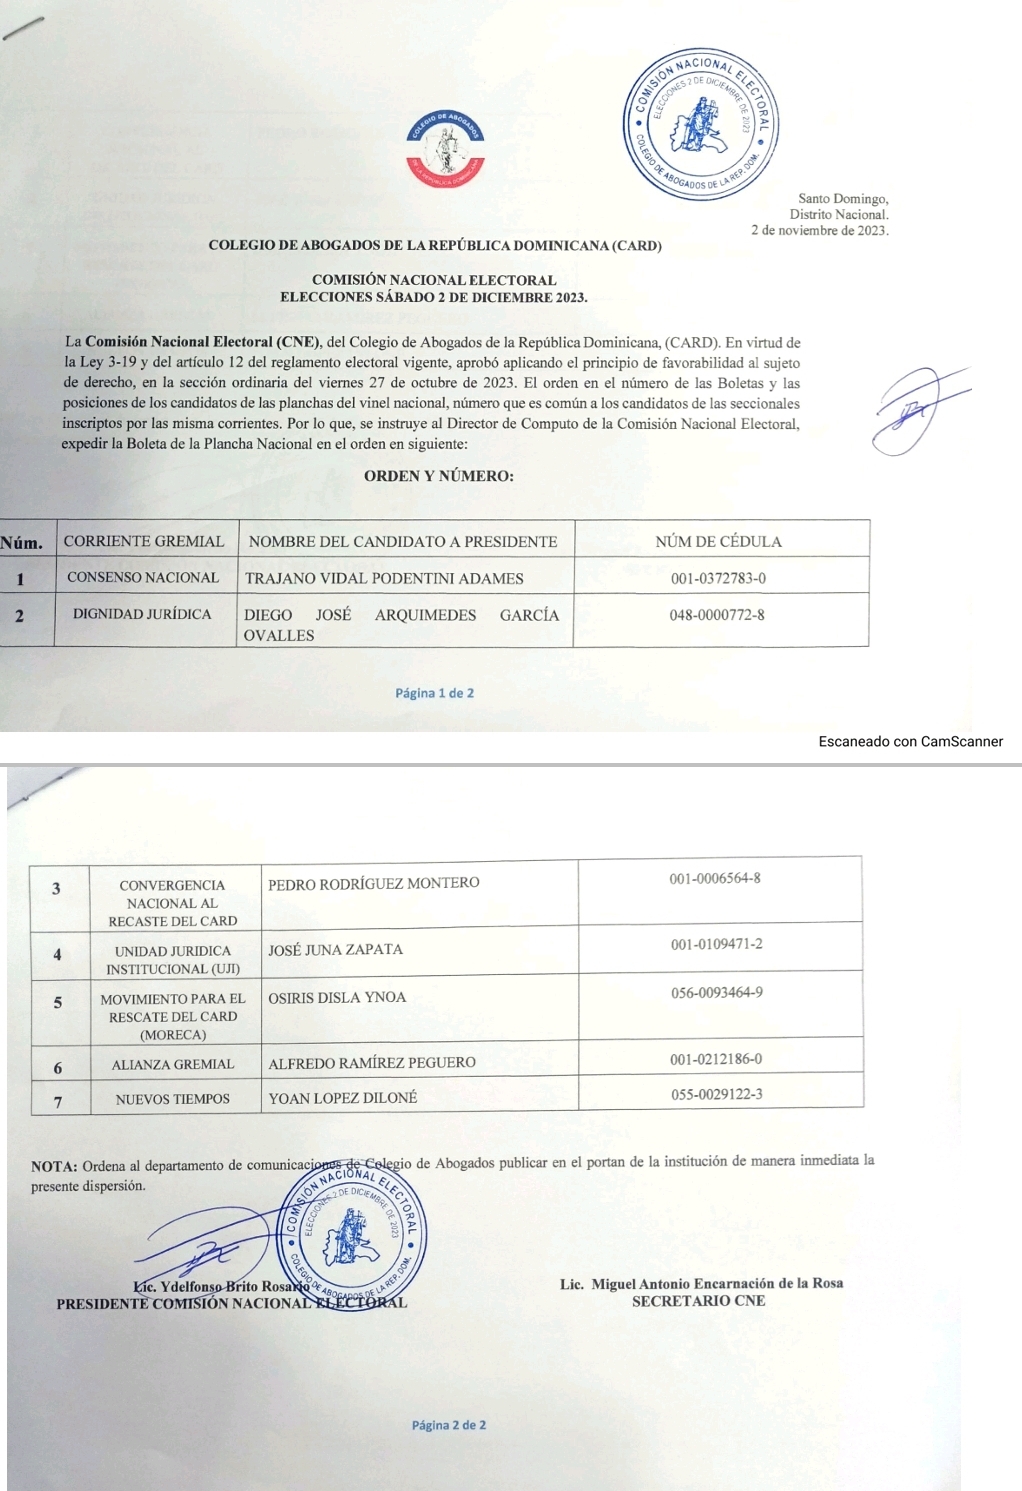 ¡Comisión Nacional Electoral emite el orden en el número de las Boletas y las posiciones de los candidatos!